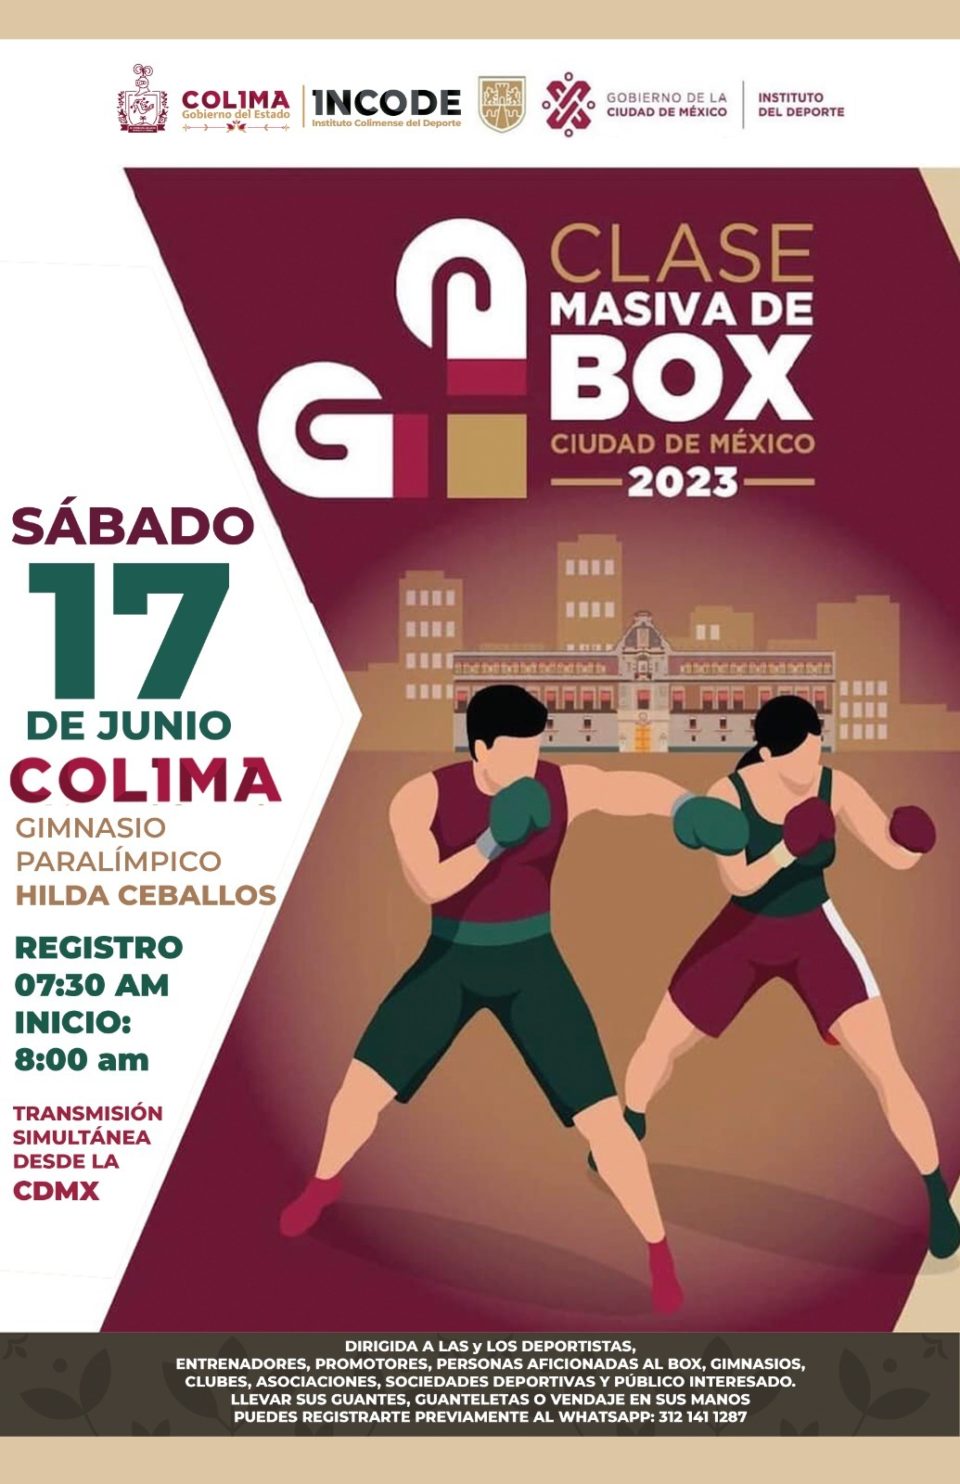 Incode invita a Clase Masiva de Box 2023, este sábado en la Unidad Deportiva Morelos